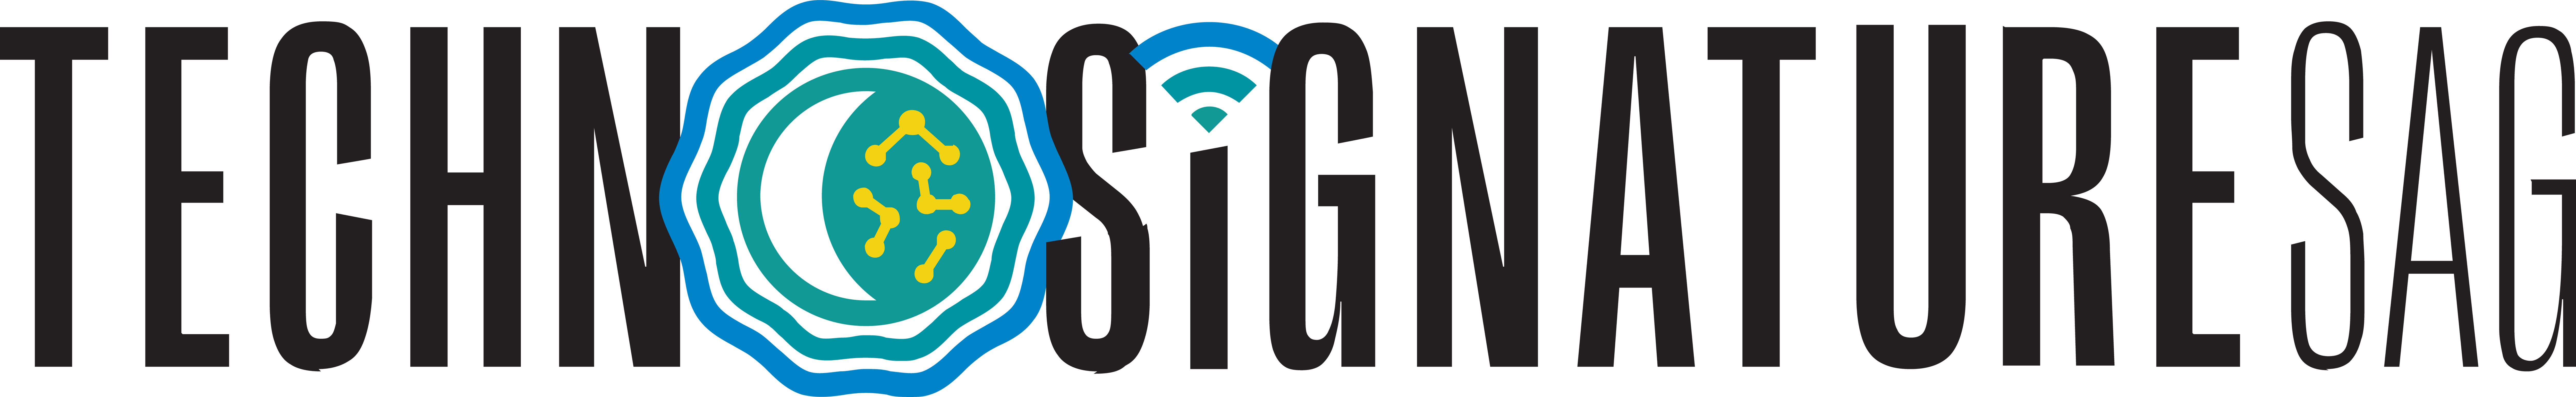 SETI-Technosig-Logo-Primary